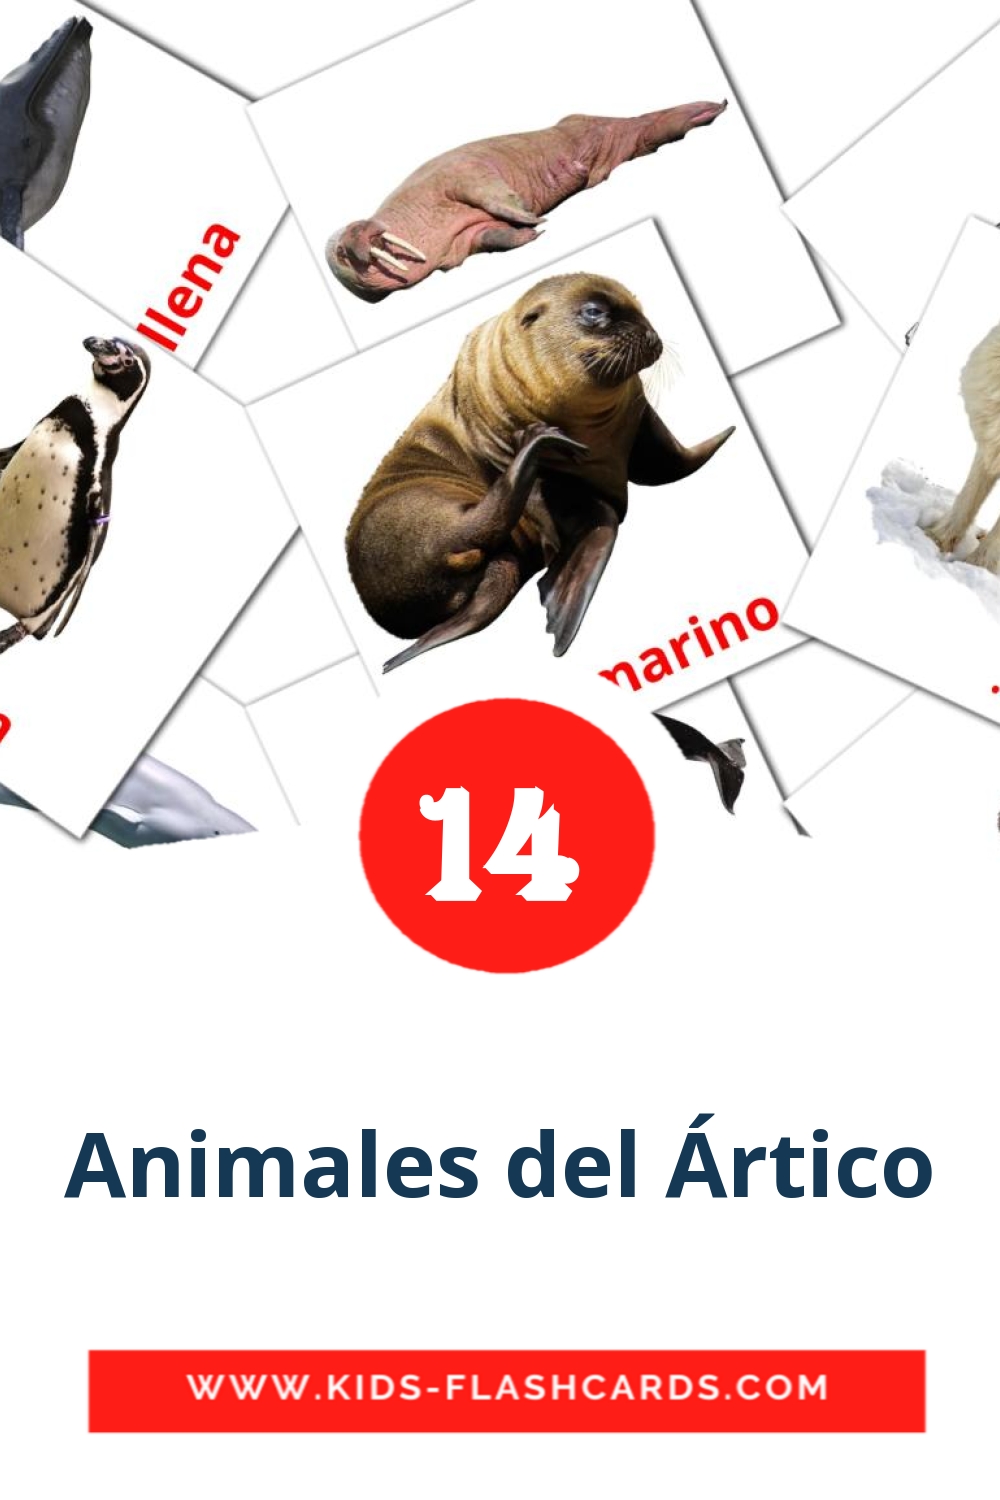 14 Animales del Ártico fotokaarten voor kleuters in het ahmaric